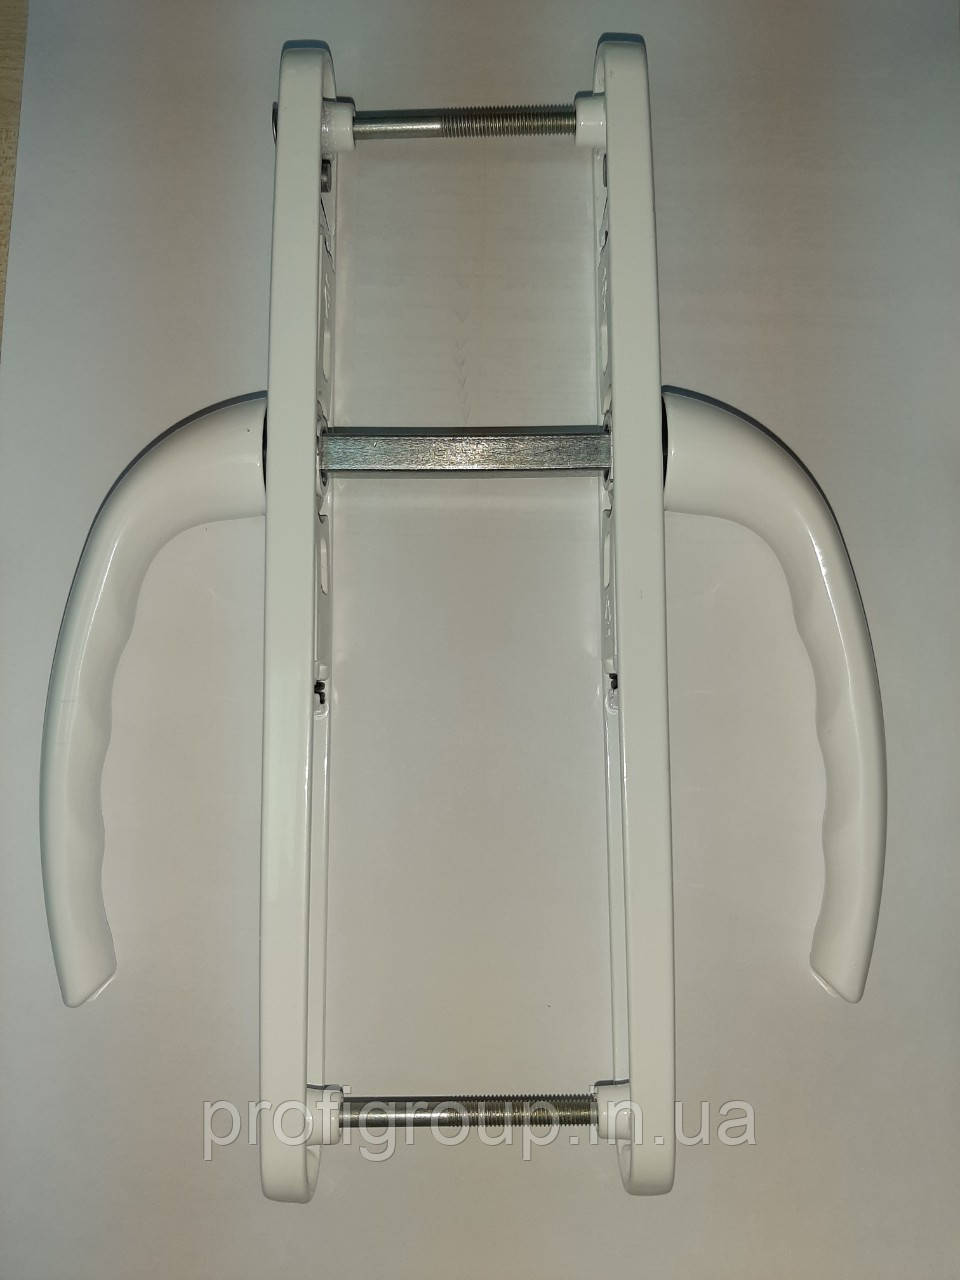 Натискний гарнітур "OPERA" 25-85/200 мм з пружиною білий для ПВХ дверей (дверна ручка)